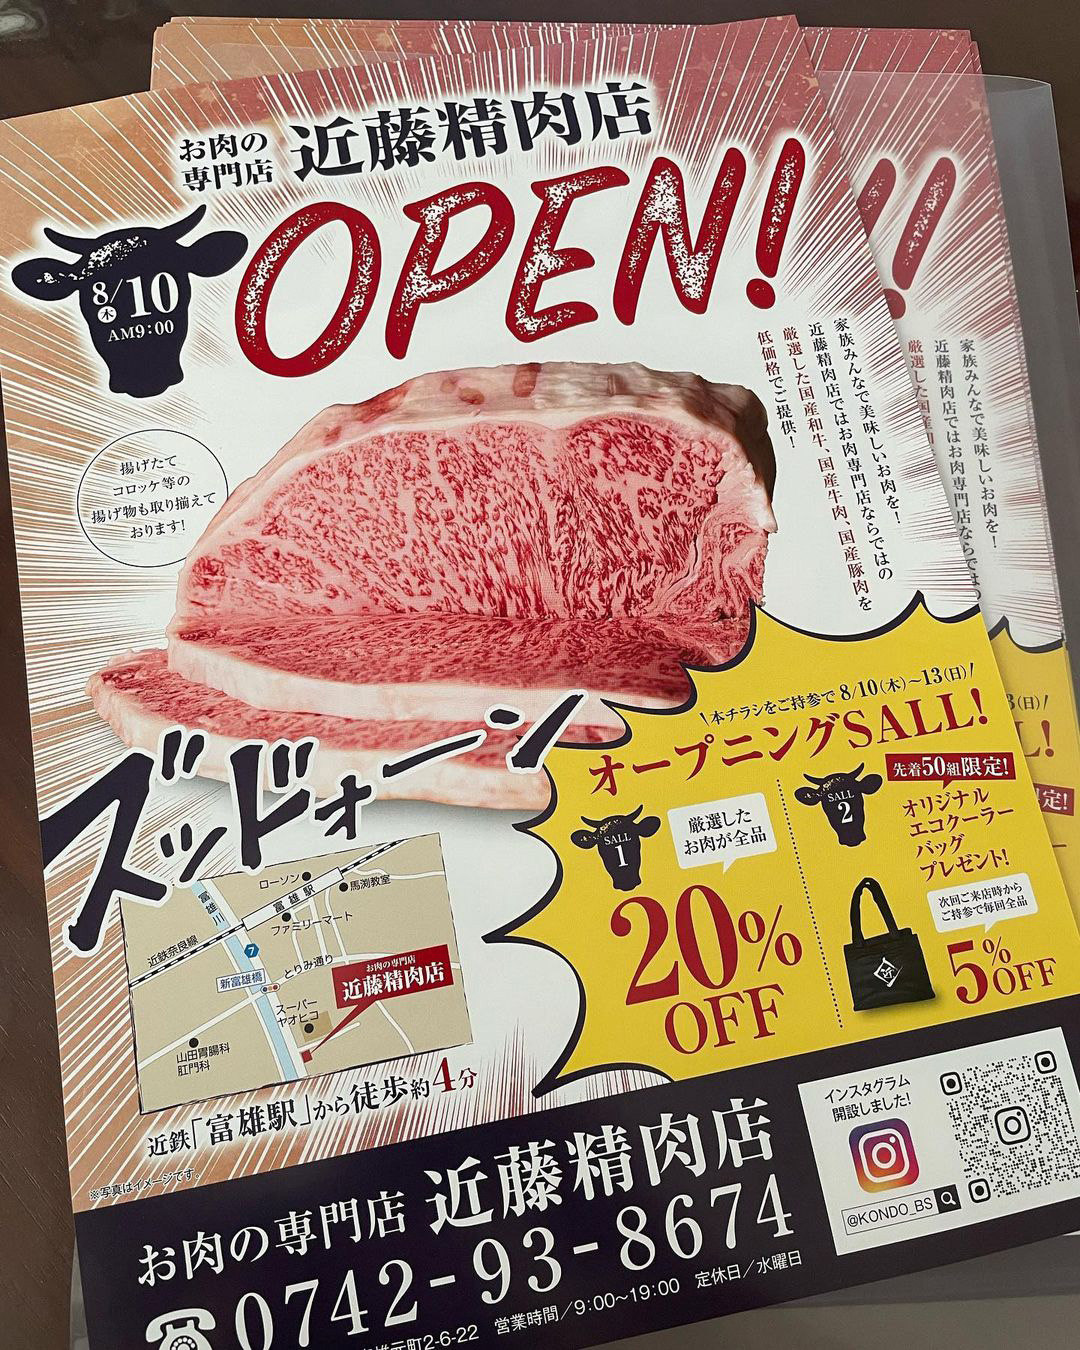 お肉の専門店「近藤精肉店」」